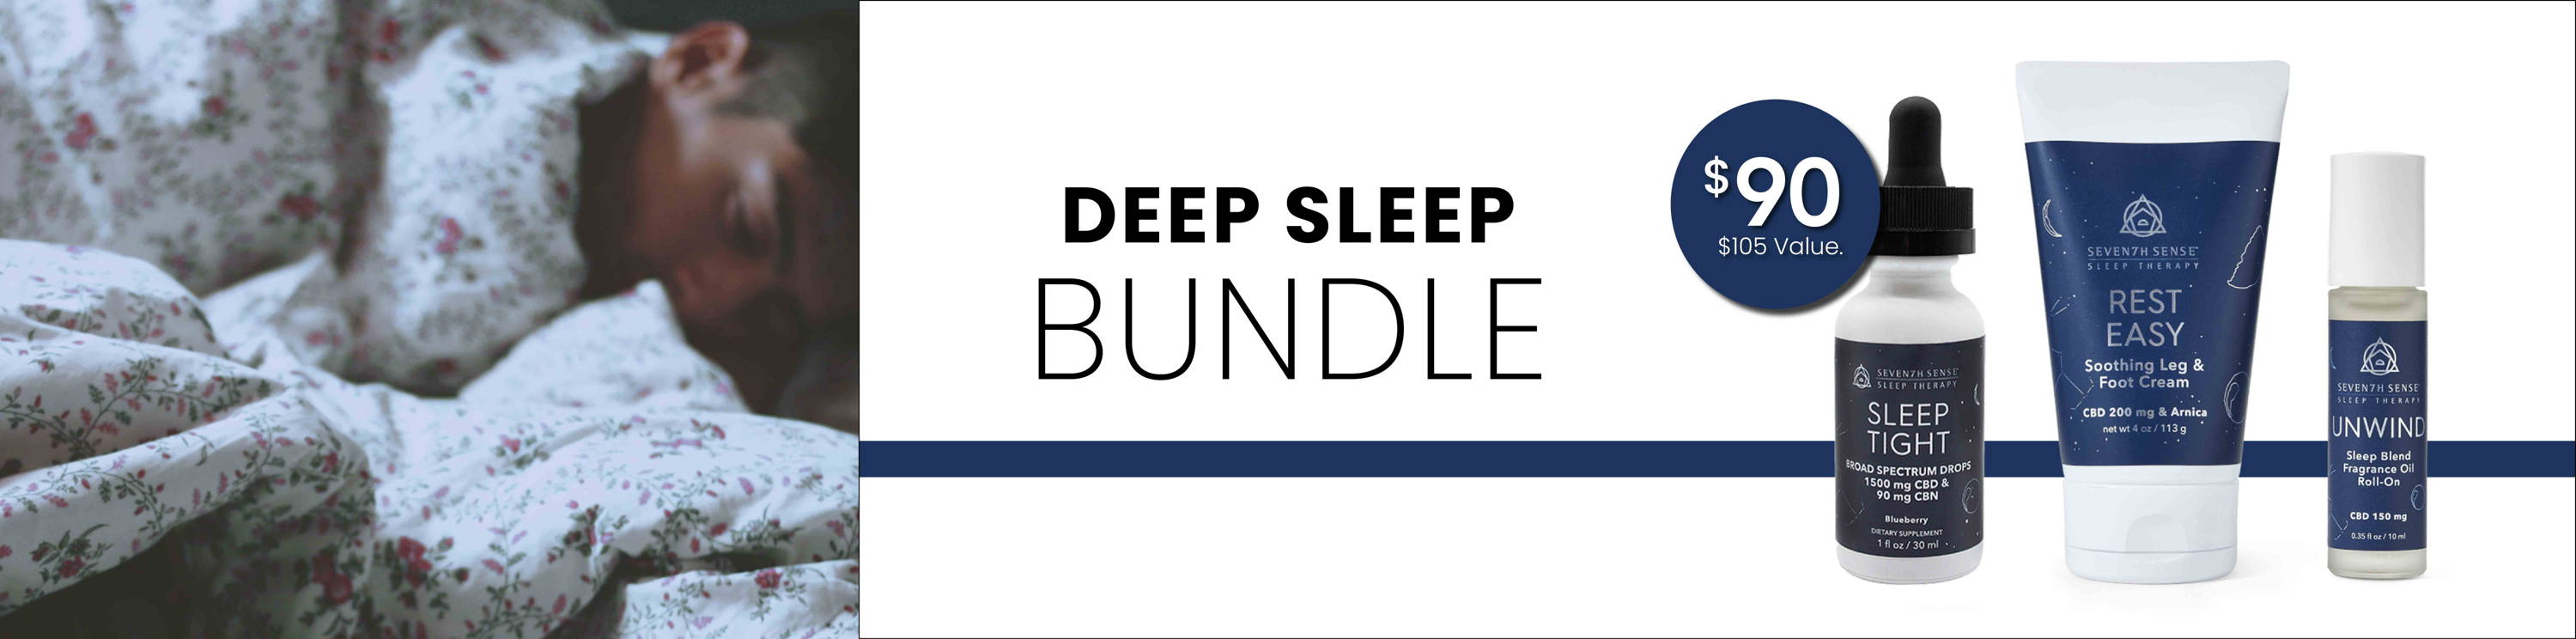 Deep Sleep Bundle $90. $105 Value.